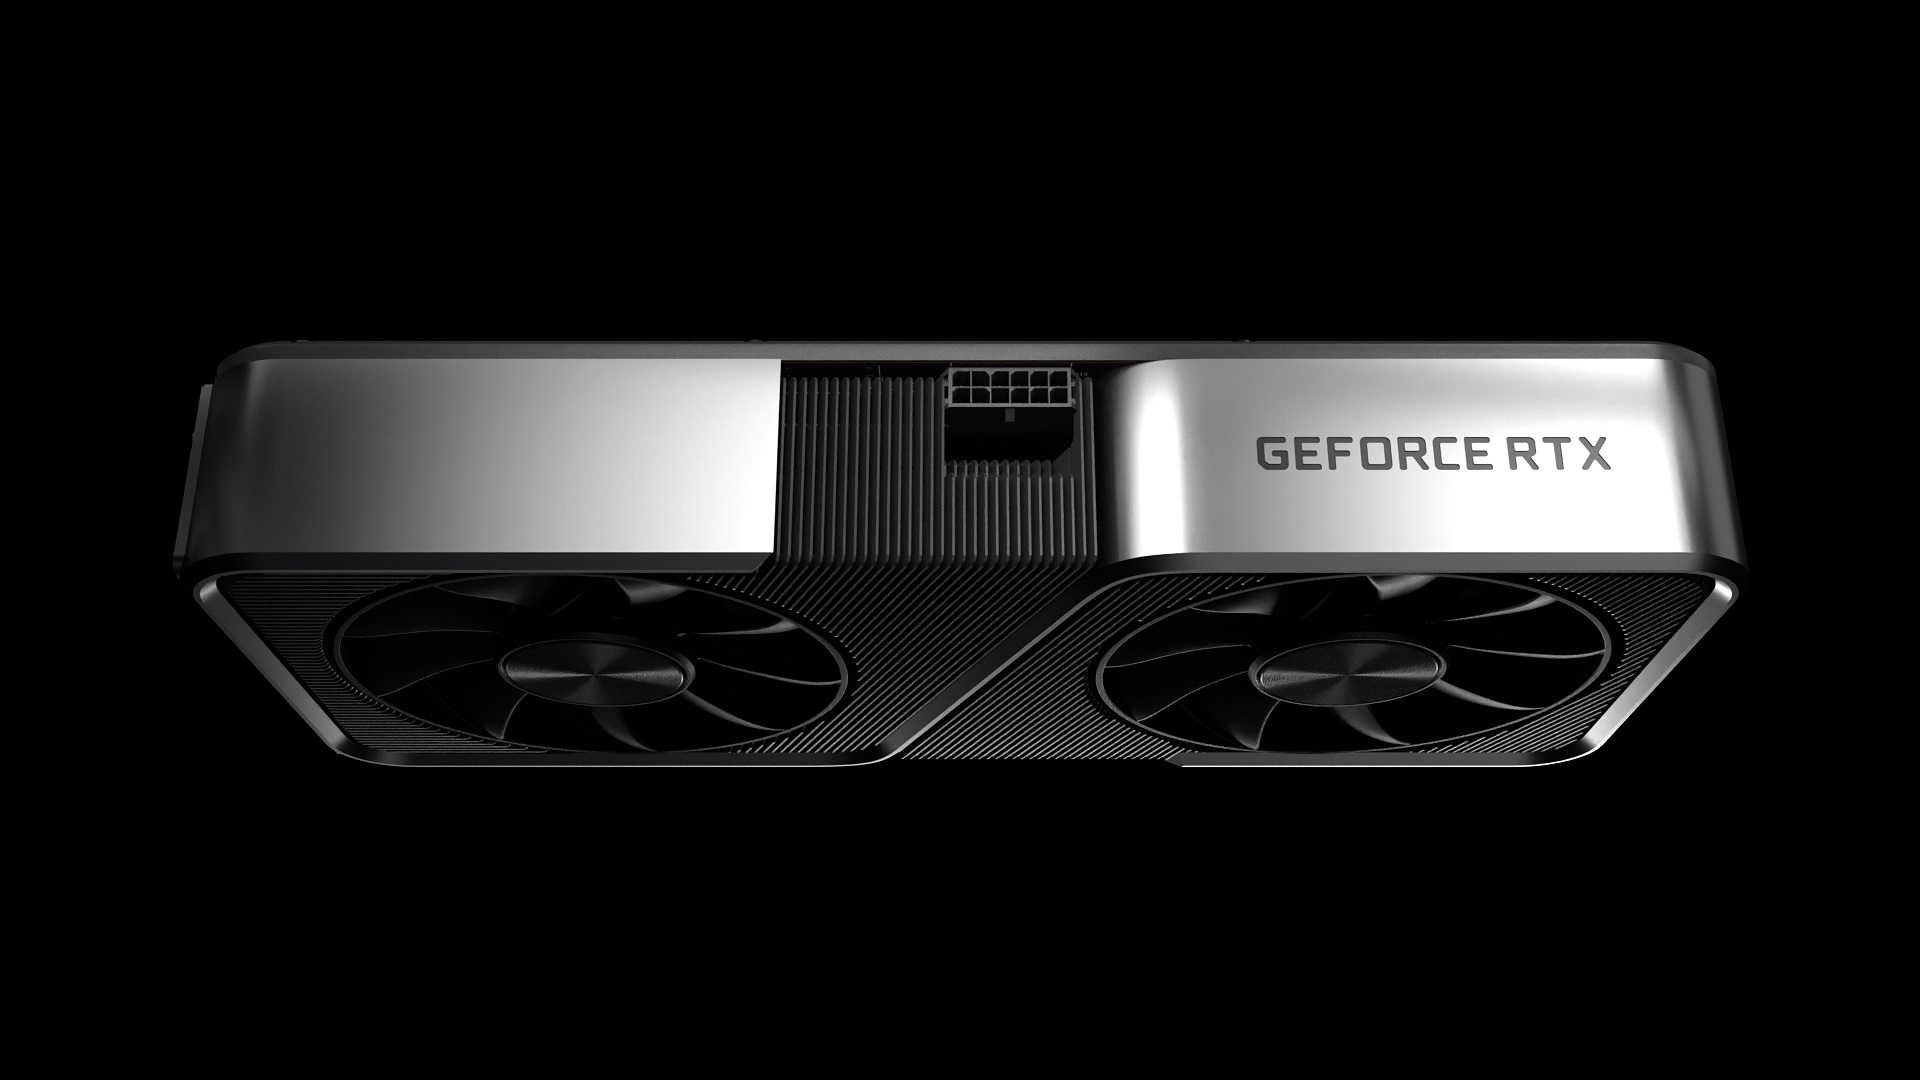 Geforce Rtx 3070 Fa'asilasilaina o le Nvidia's Cheaper Next Gen Gpu Alternative